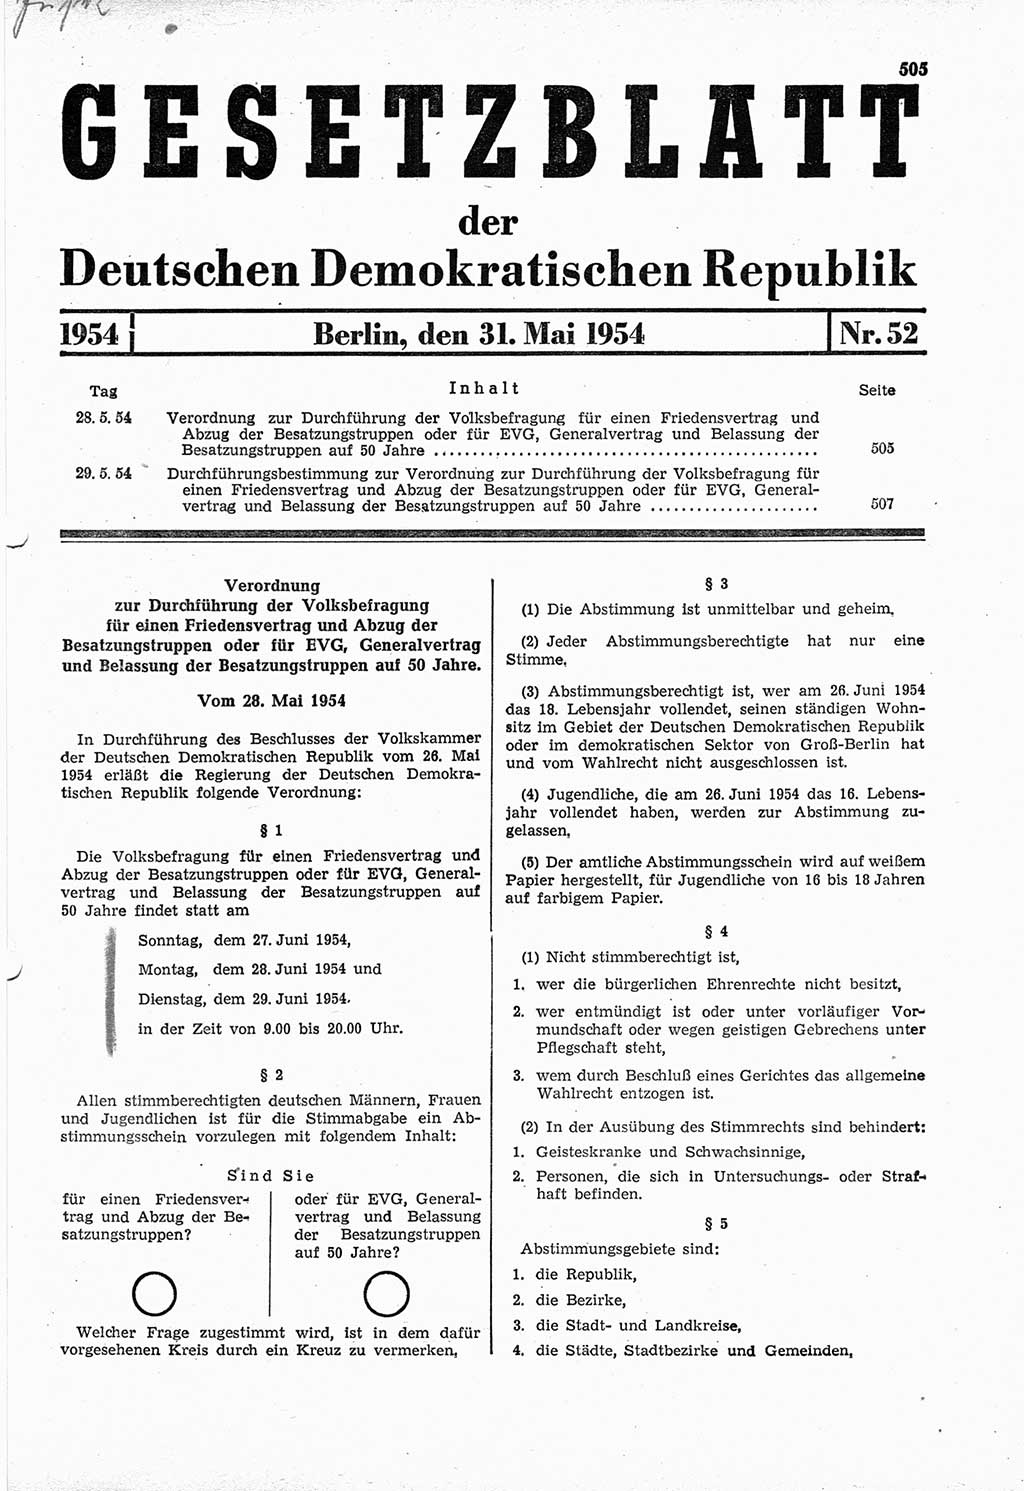 Gesetzblatt (GBl.) der Deutschen Demokratischen Republik (DDR) 1954, Seite 505 (GBl. DDR 1954, S. 505)